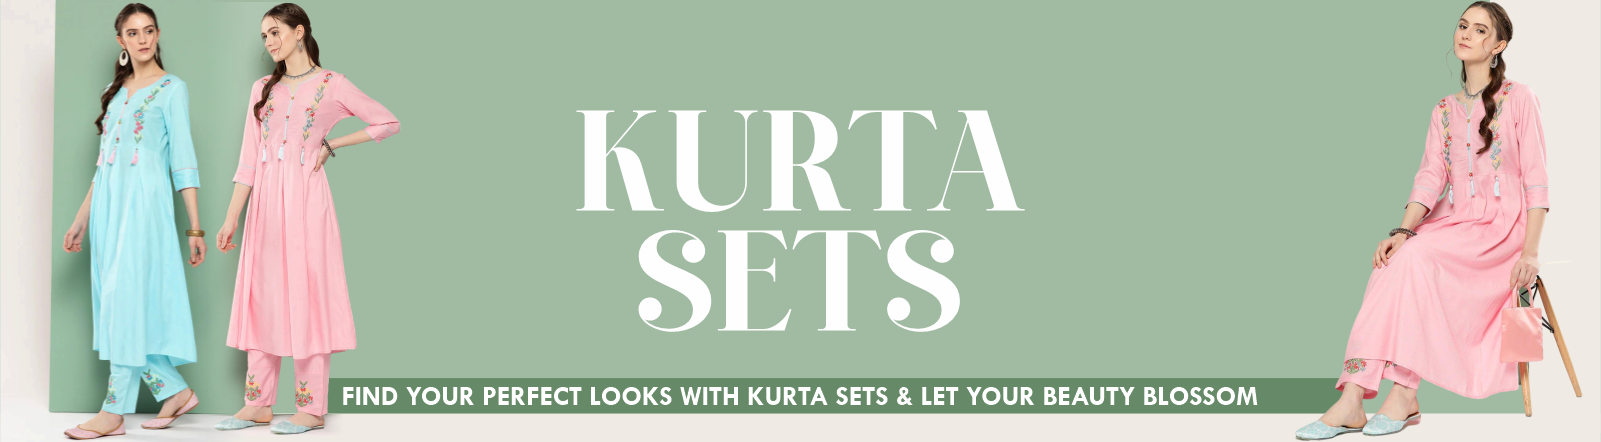 Kurta Sets